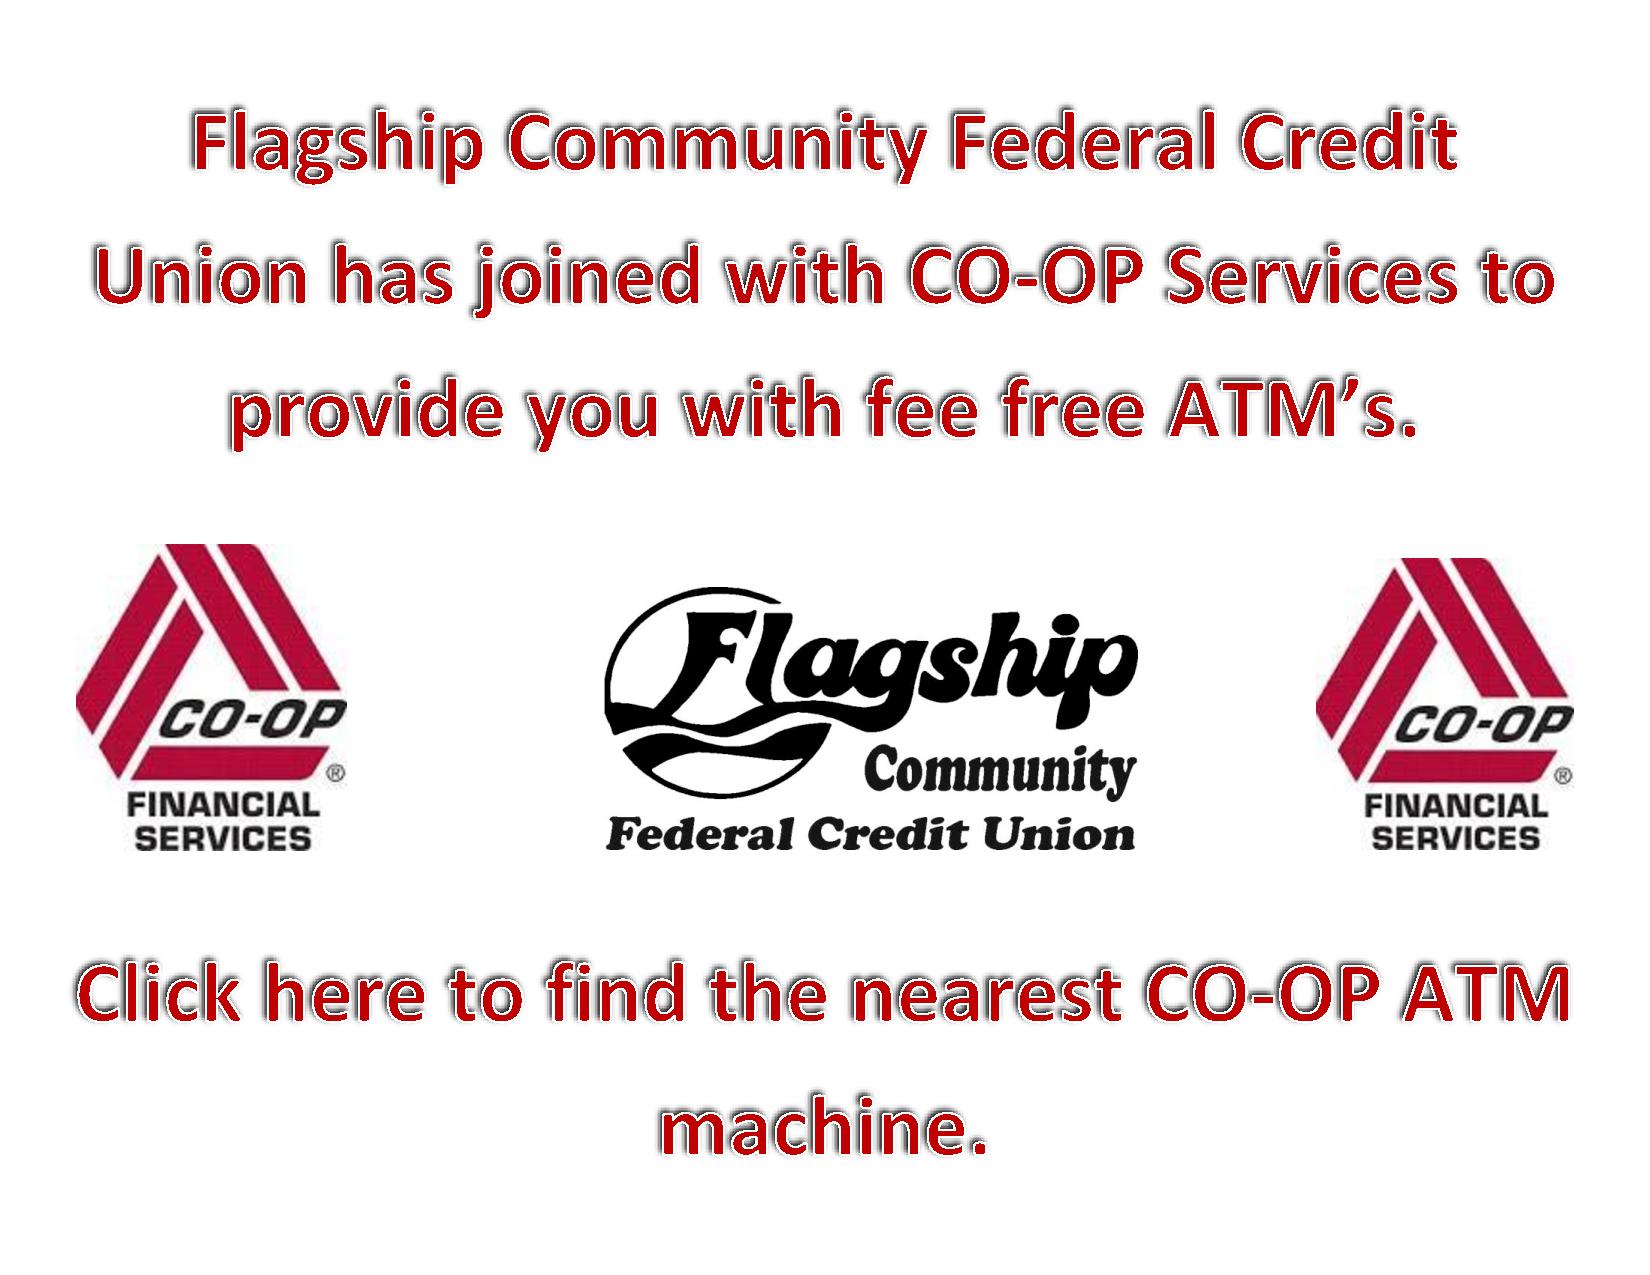 Co-Op ATM web page